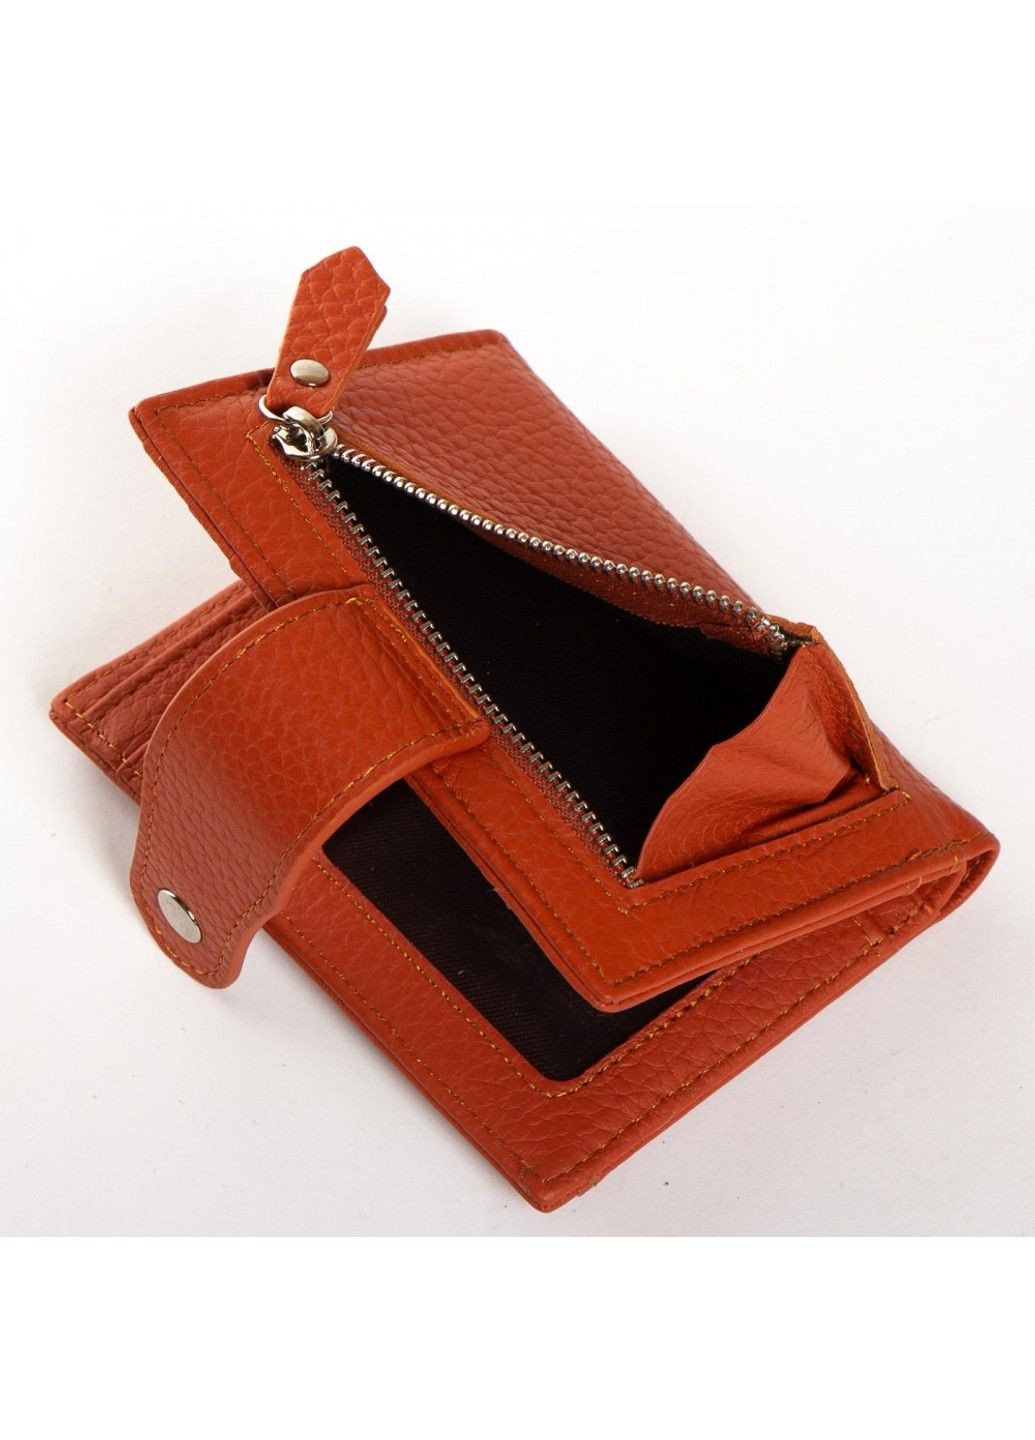 Женский кожаный кошелек Classik WN-23-15 orange Dr. Bond (282557183)